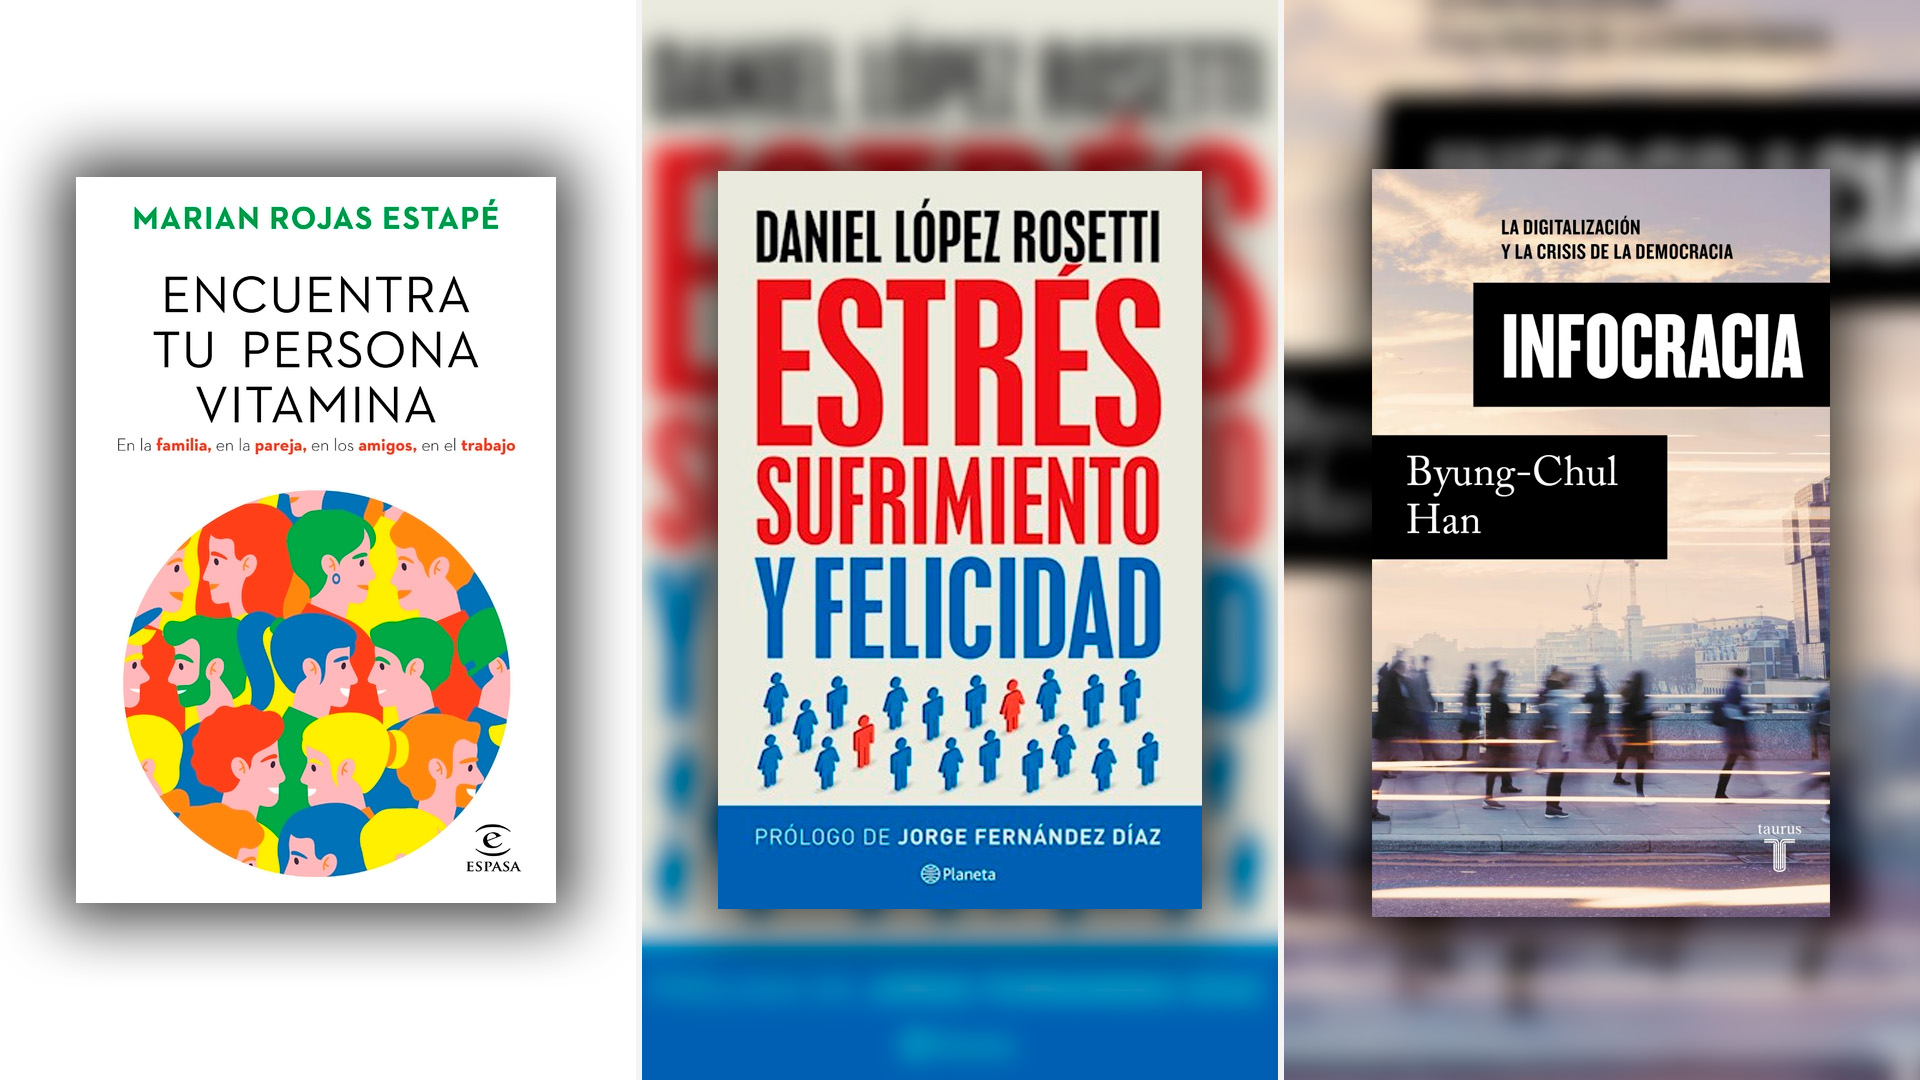 Qué leer el fin de semana: el bestseller “Encuentra tu persona vitamina”, Daniel López Rosetti y Byung-Chul Han por menos de 1.200 pesos argentinos